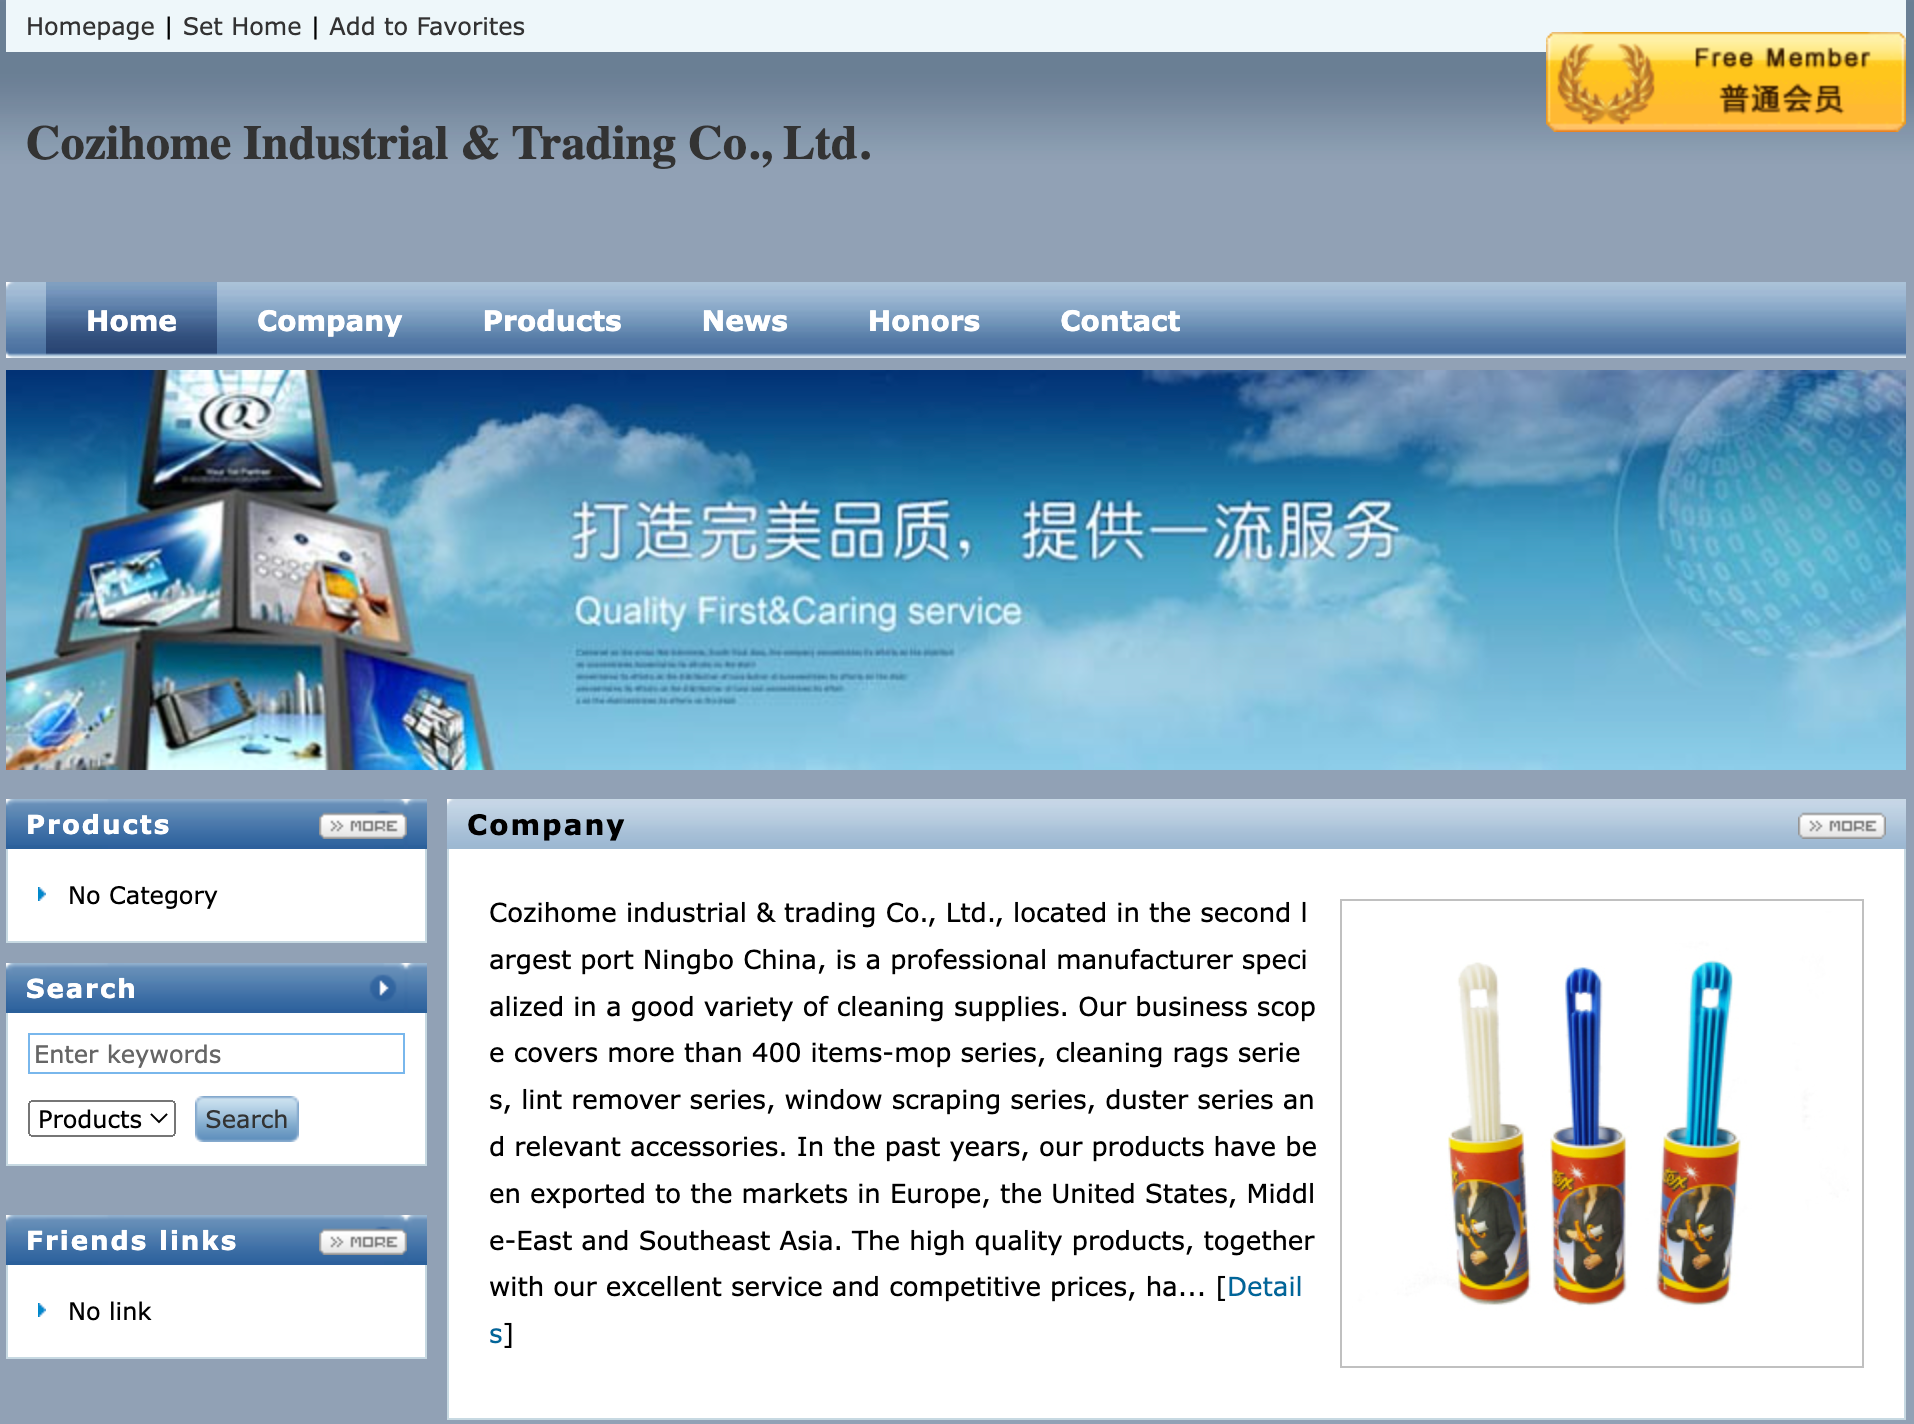 Cozihome Industrial & Trading Co., Ltd